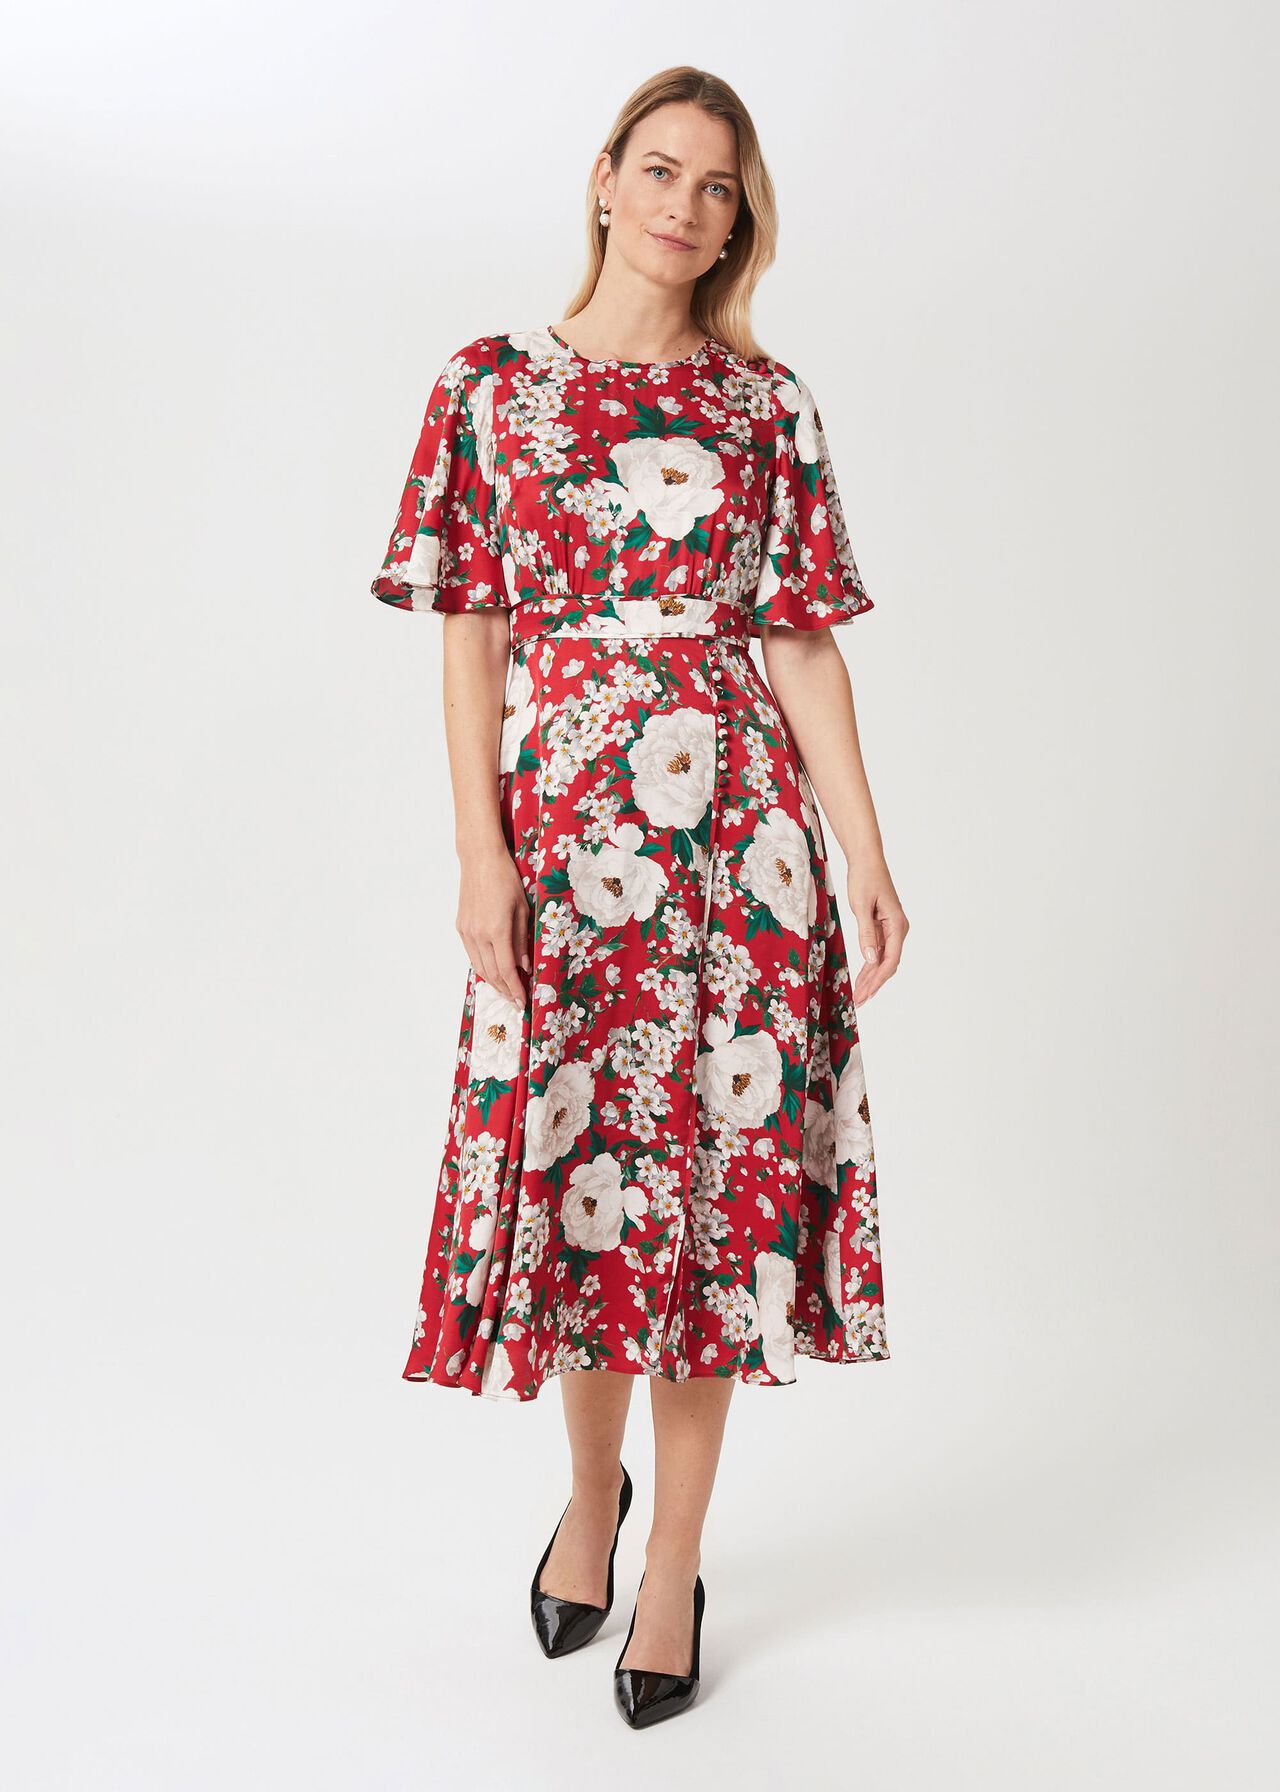 Bella Floral Print Satin Dress | Hobbs UK